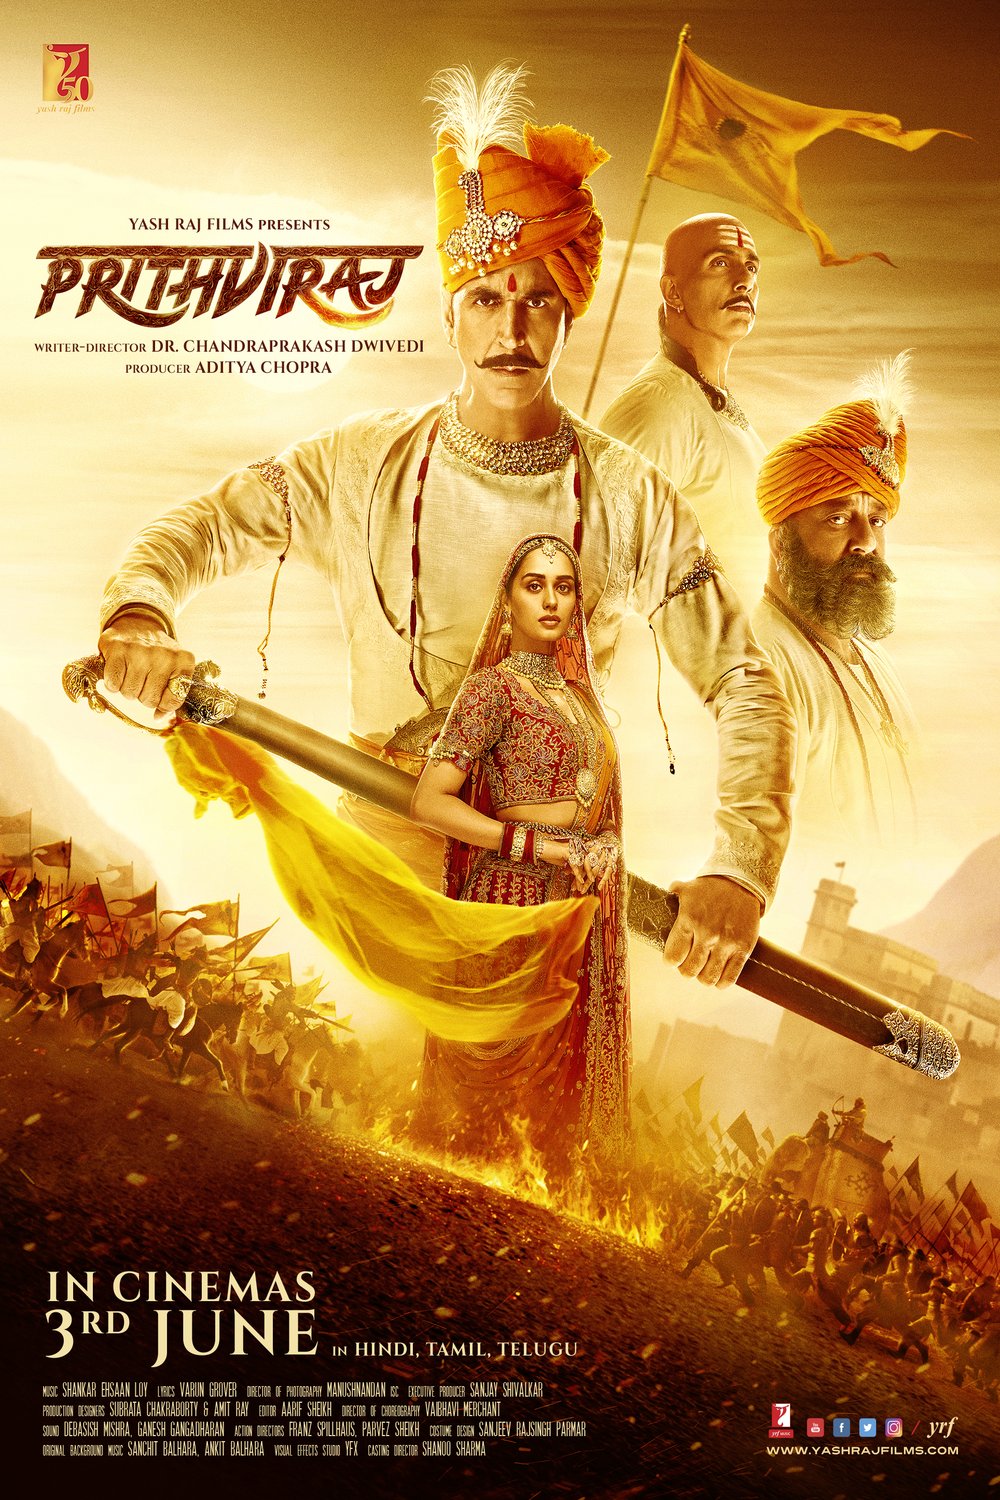 L'affiche originale du film Prithviraj en Hindi